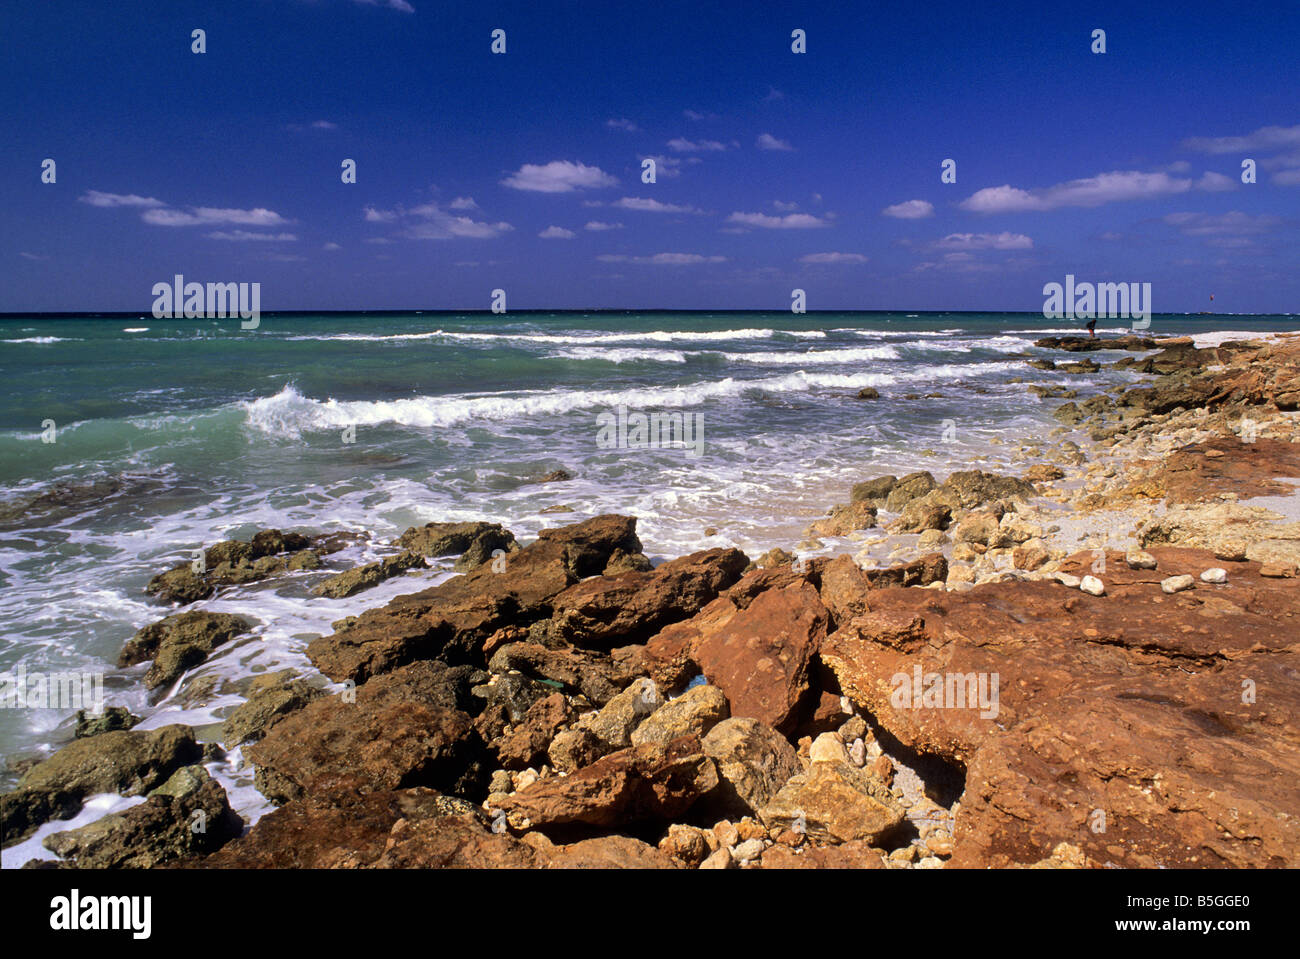 Is Arutas spiaggia, della penisola del Sinis, Oristano, Sardegna, Italia Foto Stock